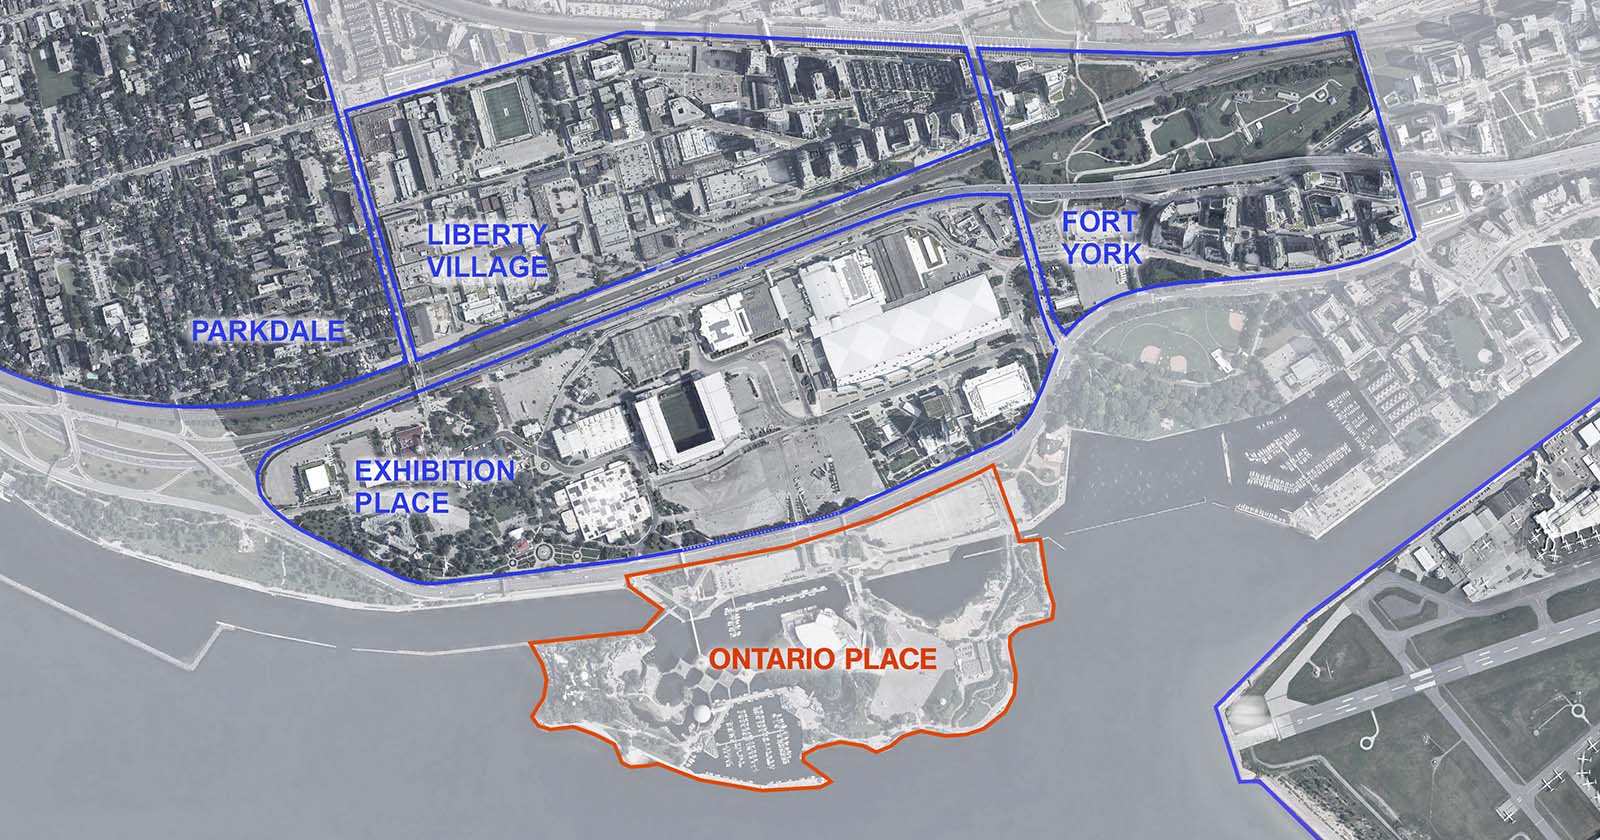 Carte de la région de Toronto adjacente à la Place de l’Ontario, montrant les quartiers situés au nord, notamment Exhibition Place, Parkdale, Liberty Village, Fort York et Niagara. 